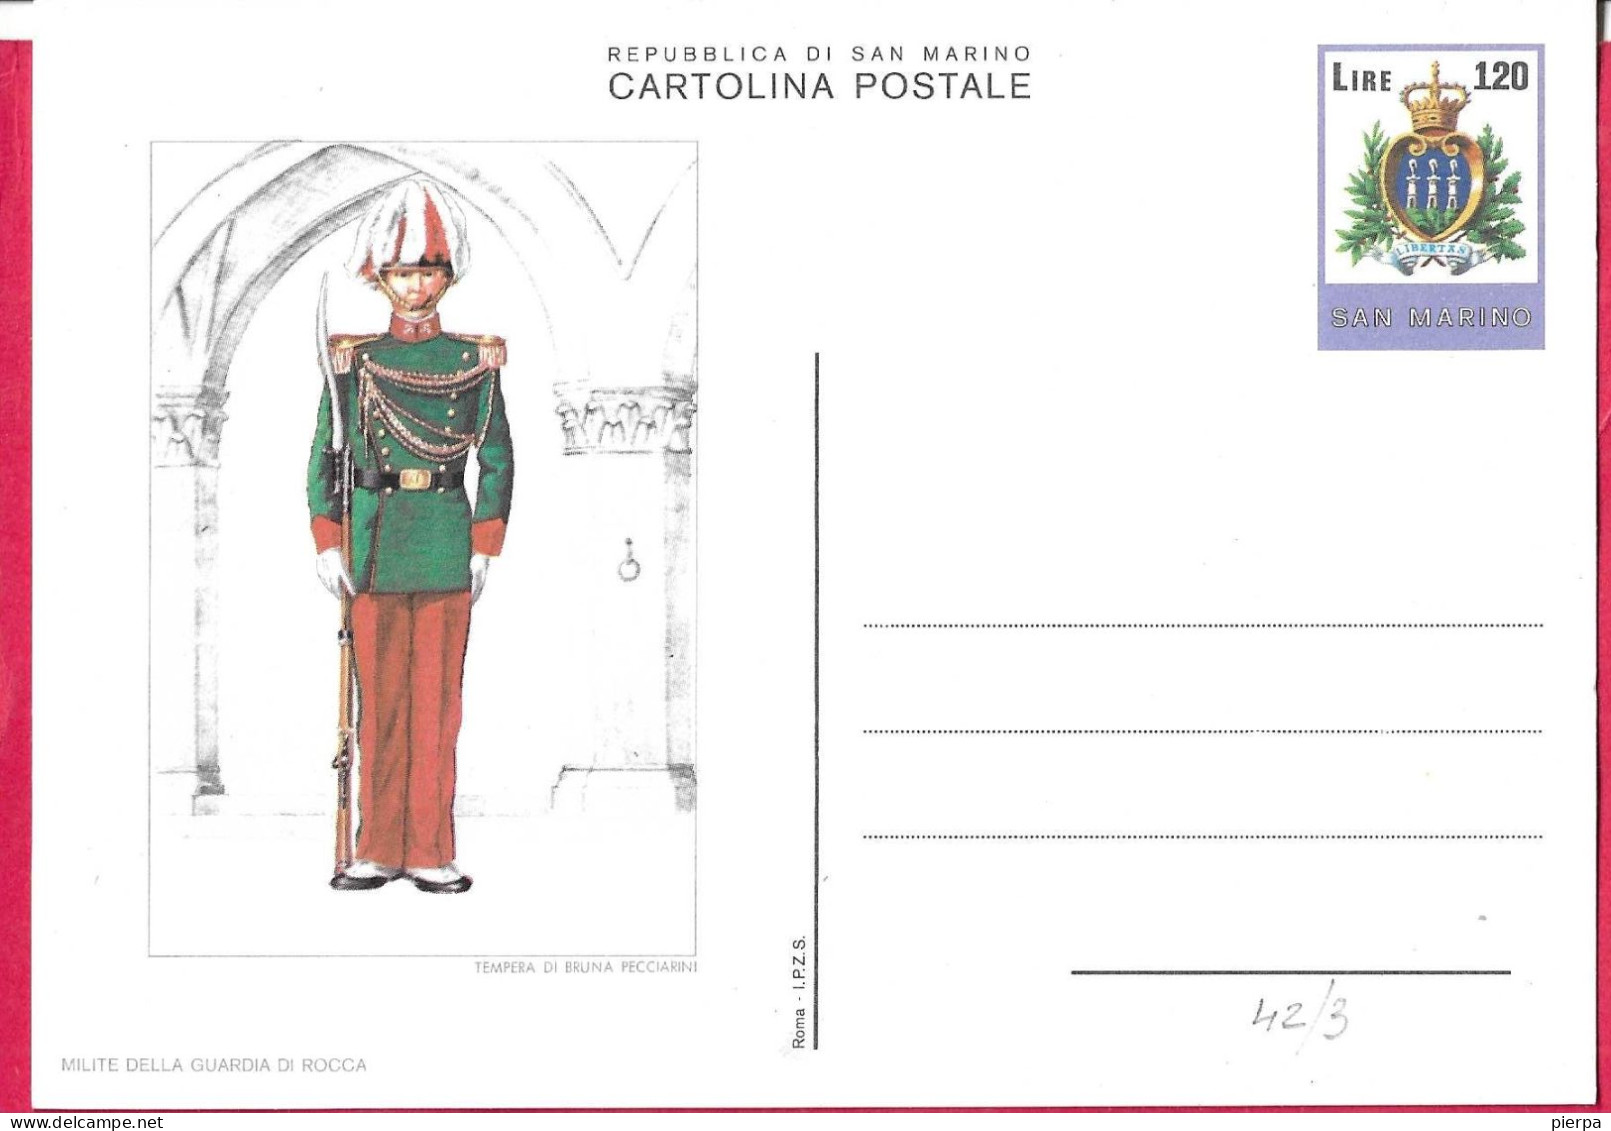 SAN MARINO - INTERO CARTOLINA POSTALE UNIFORMI (MILITE DELLA GUARDIA DI ROCCA) LIRE 120 (CAT. INT 42/3) - NUOVO - Entiers Postaux